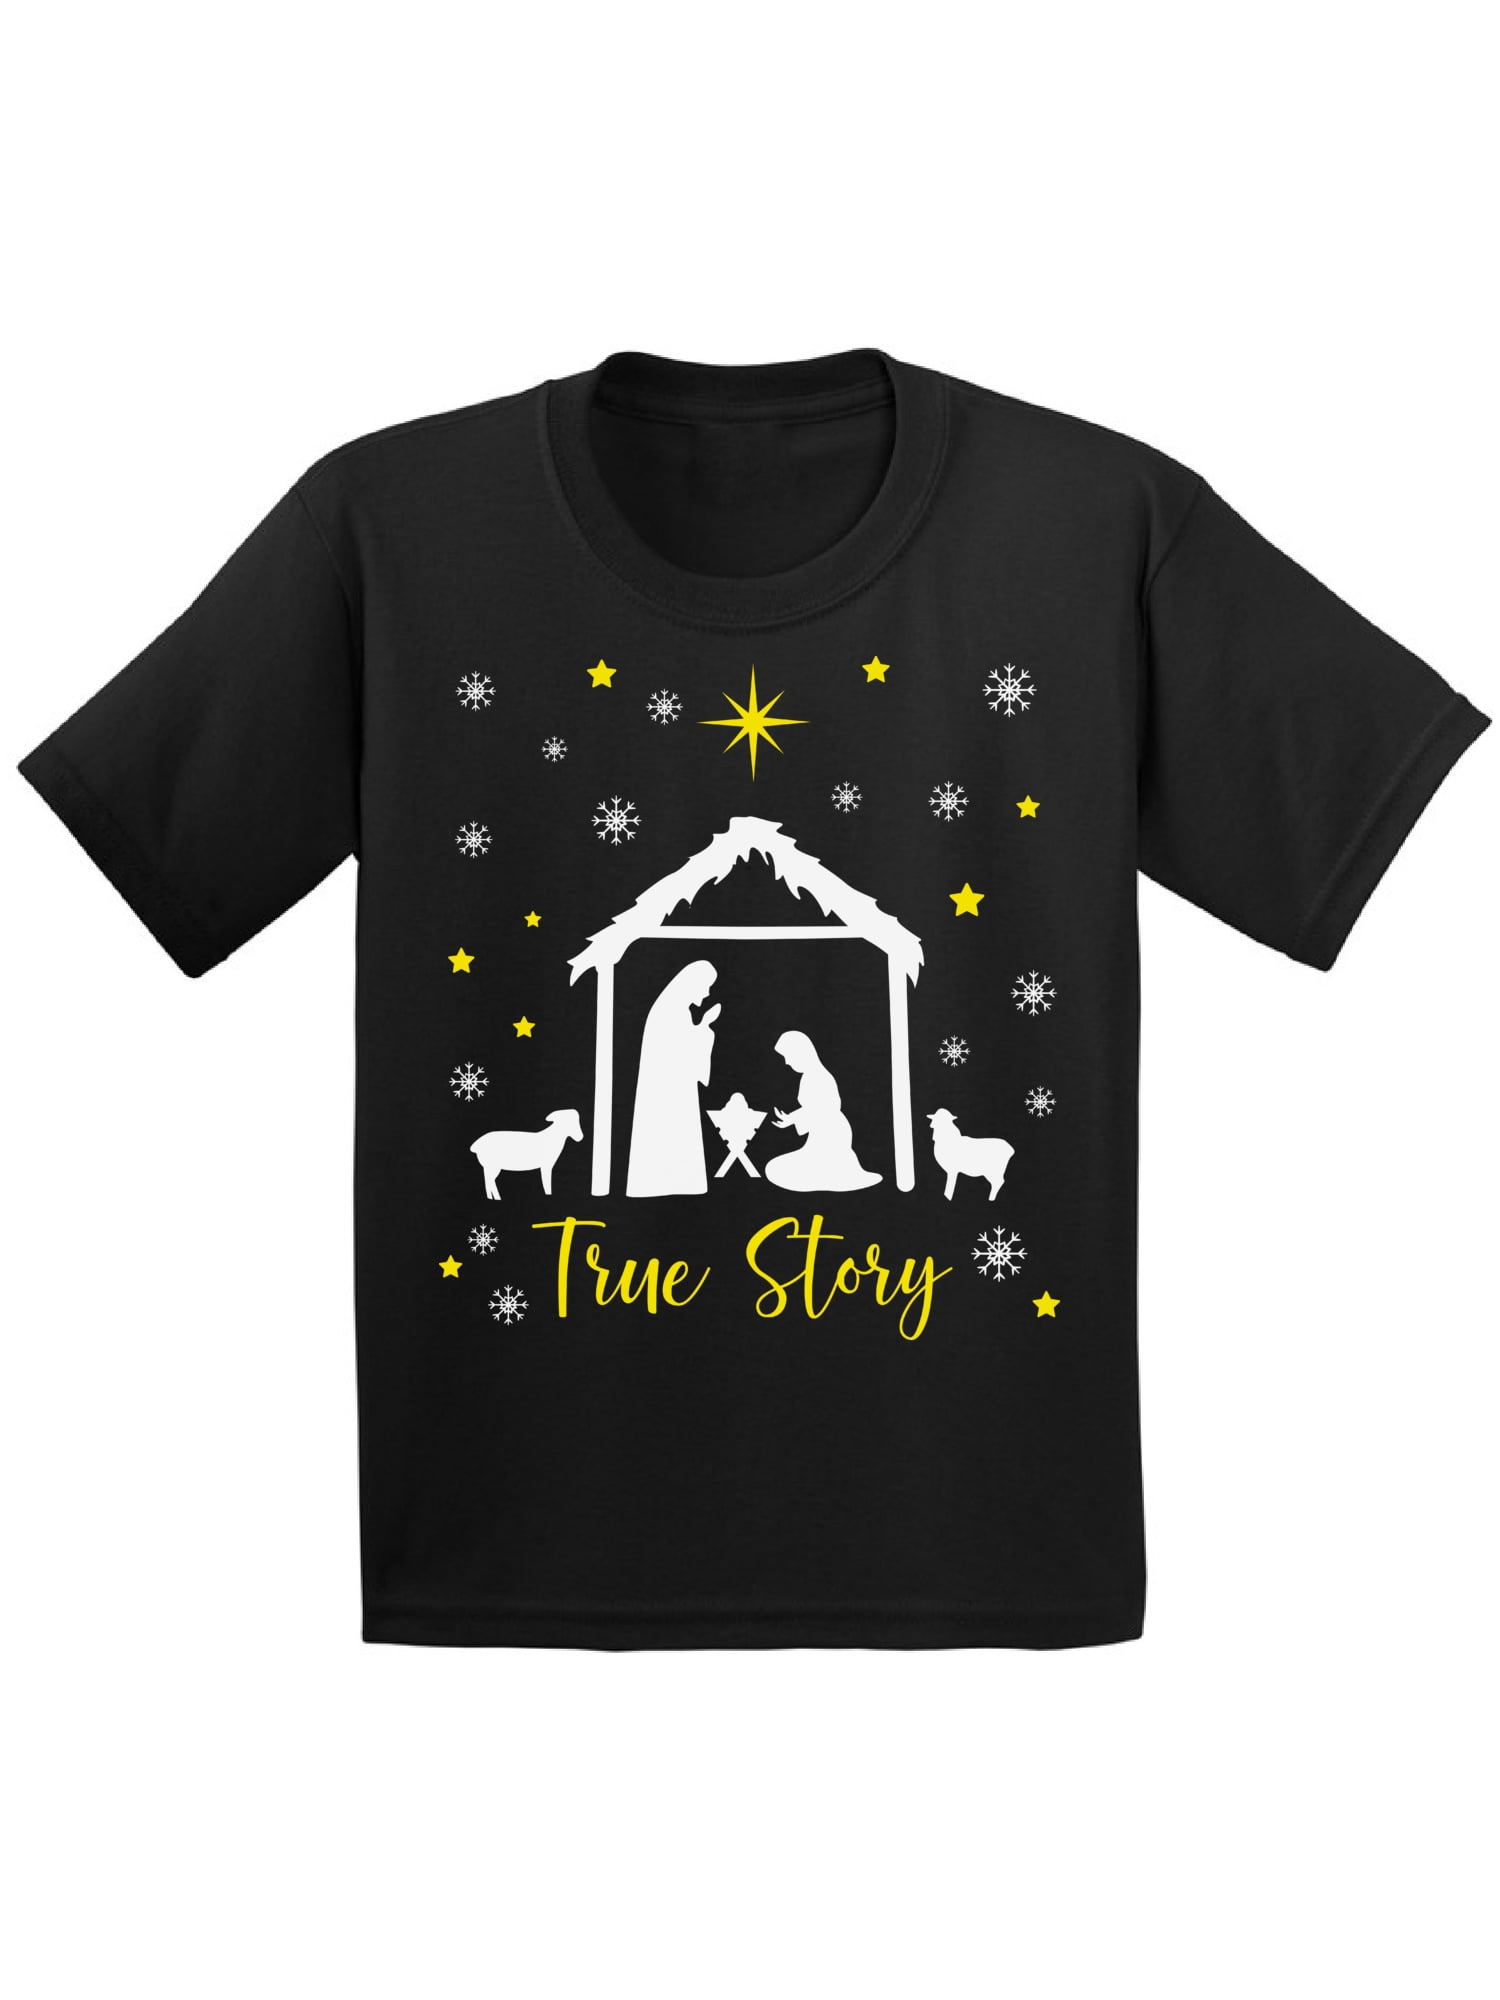 True Story Shirt Xmas Kids T-Shirt Jesus Tee for Girls Cross Merry ...